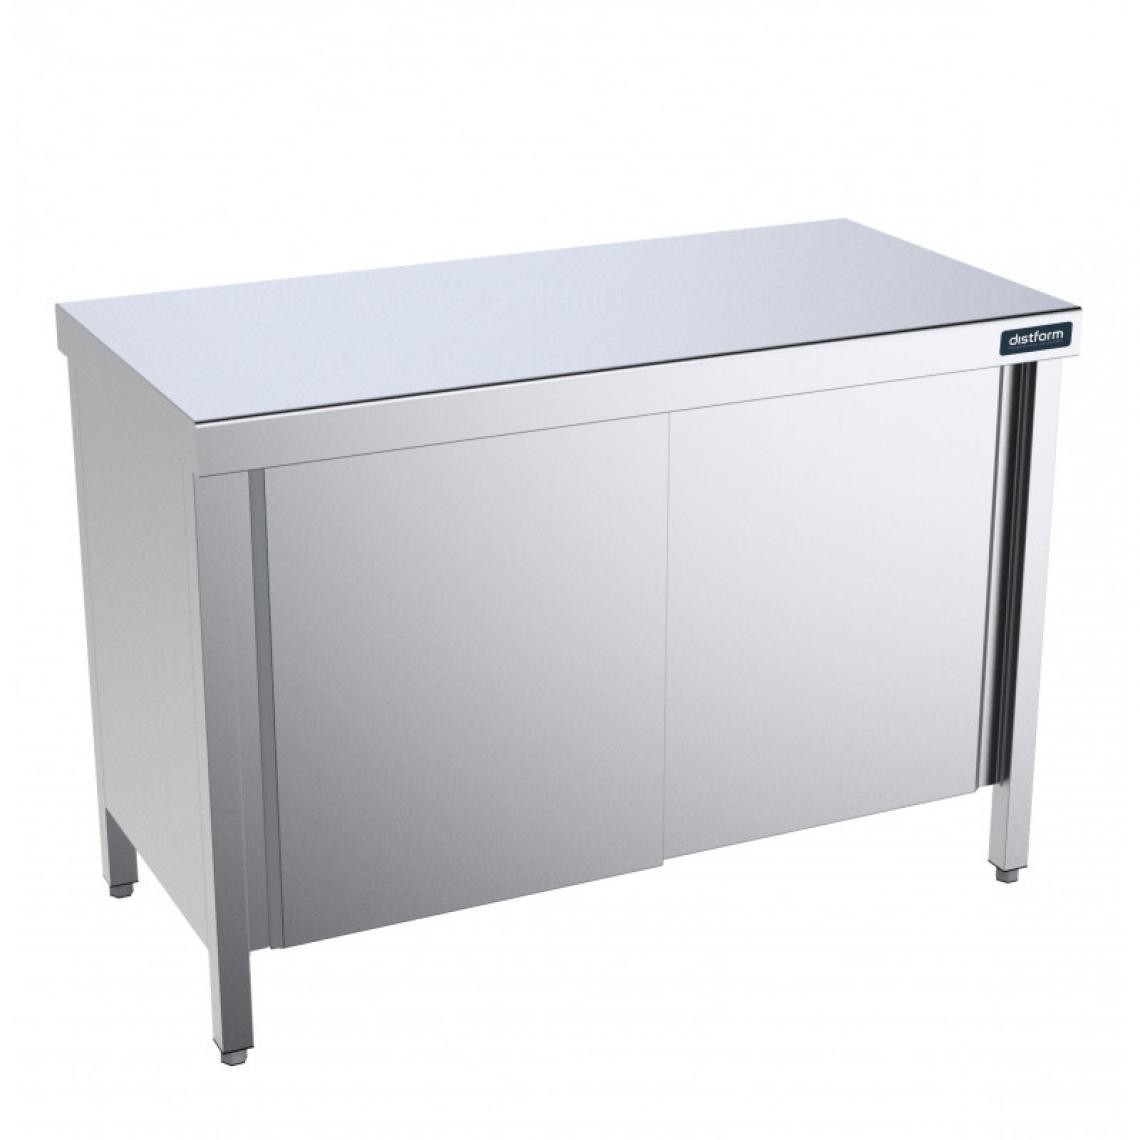 DISTFORM - Table en Inox Gamme 900 avec Portes et Etagères - Distform - Acier inoxydable2600x900 - Tables à manger